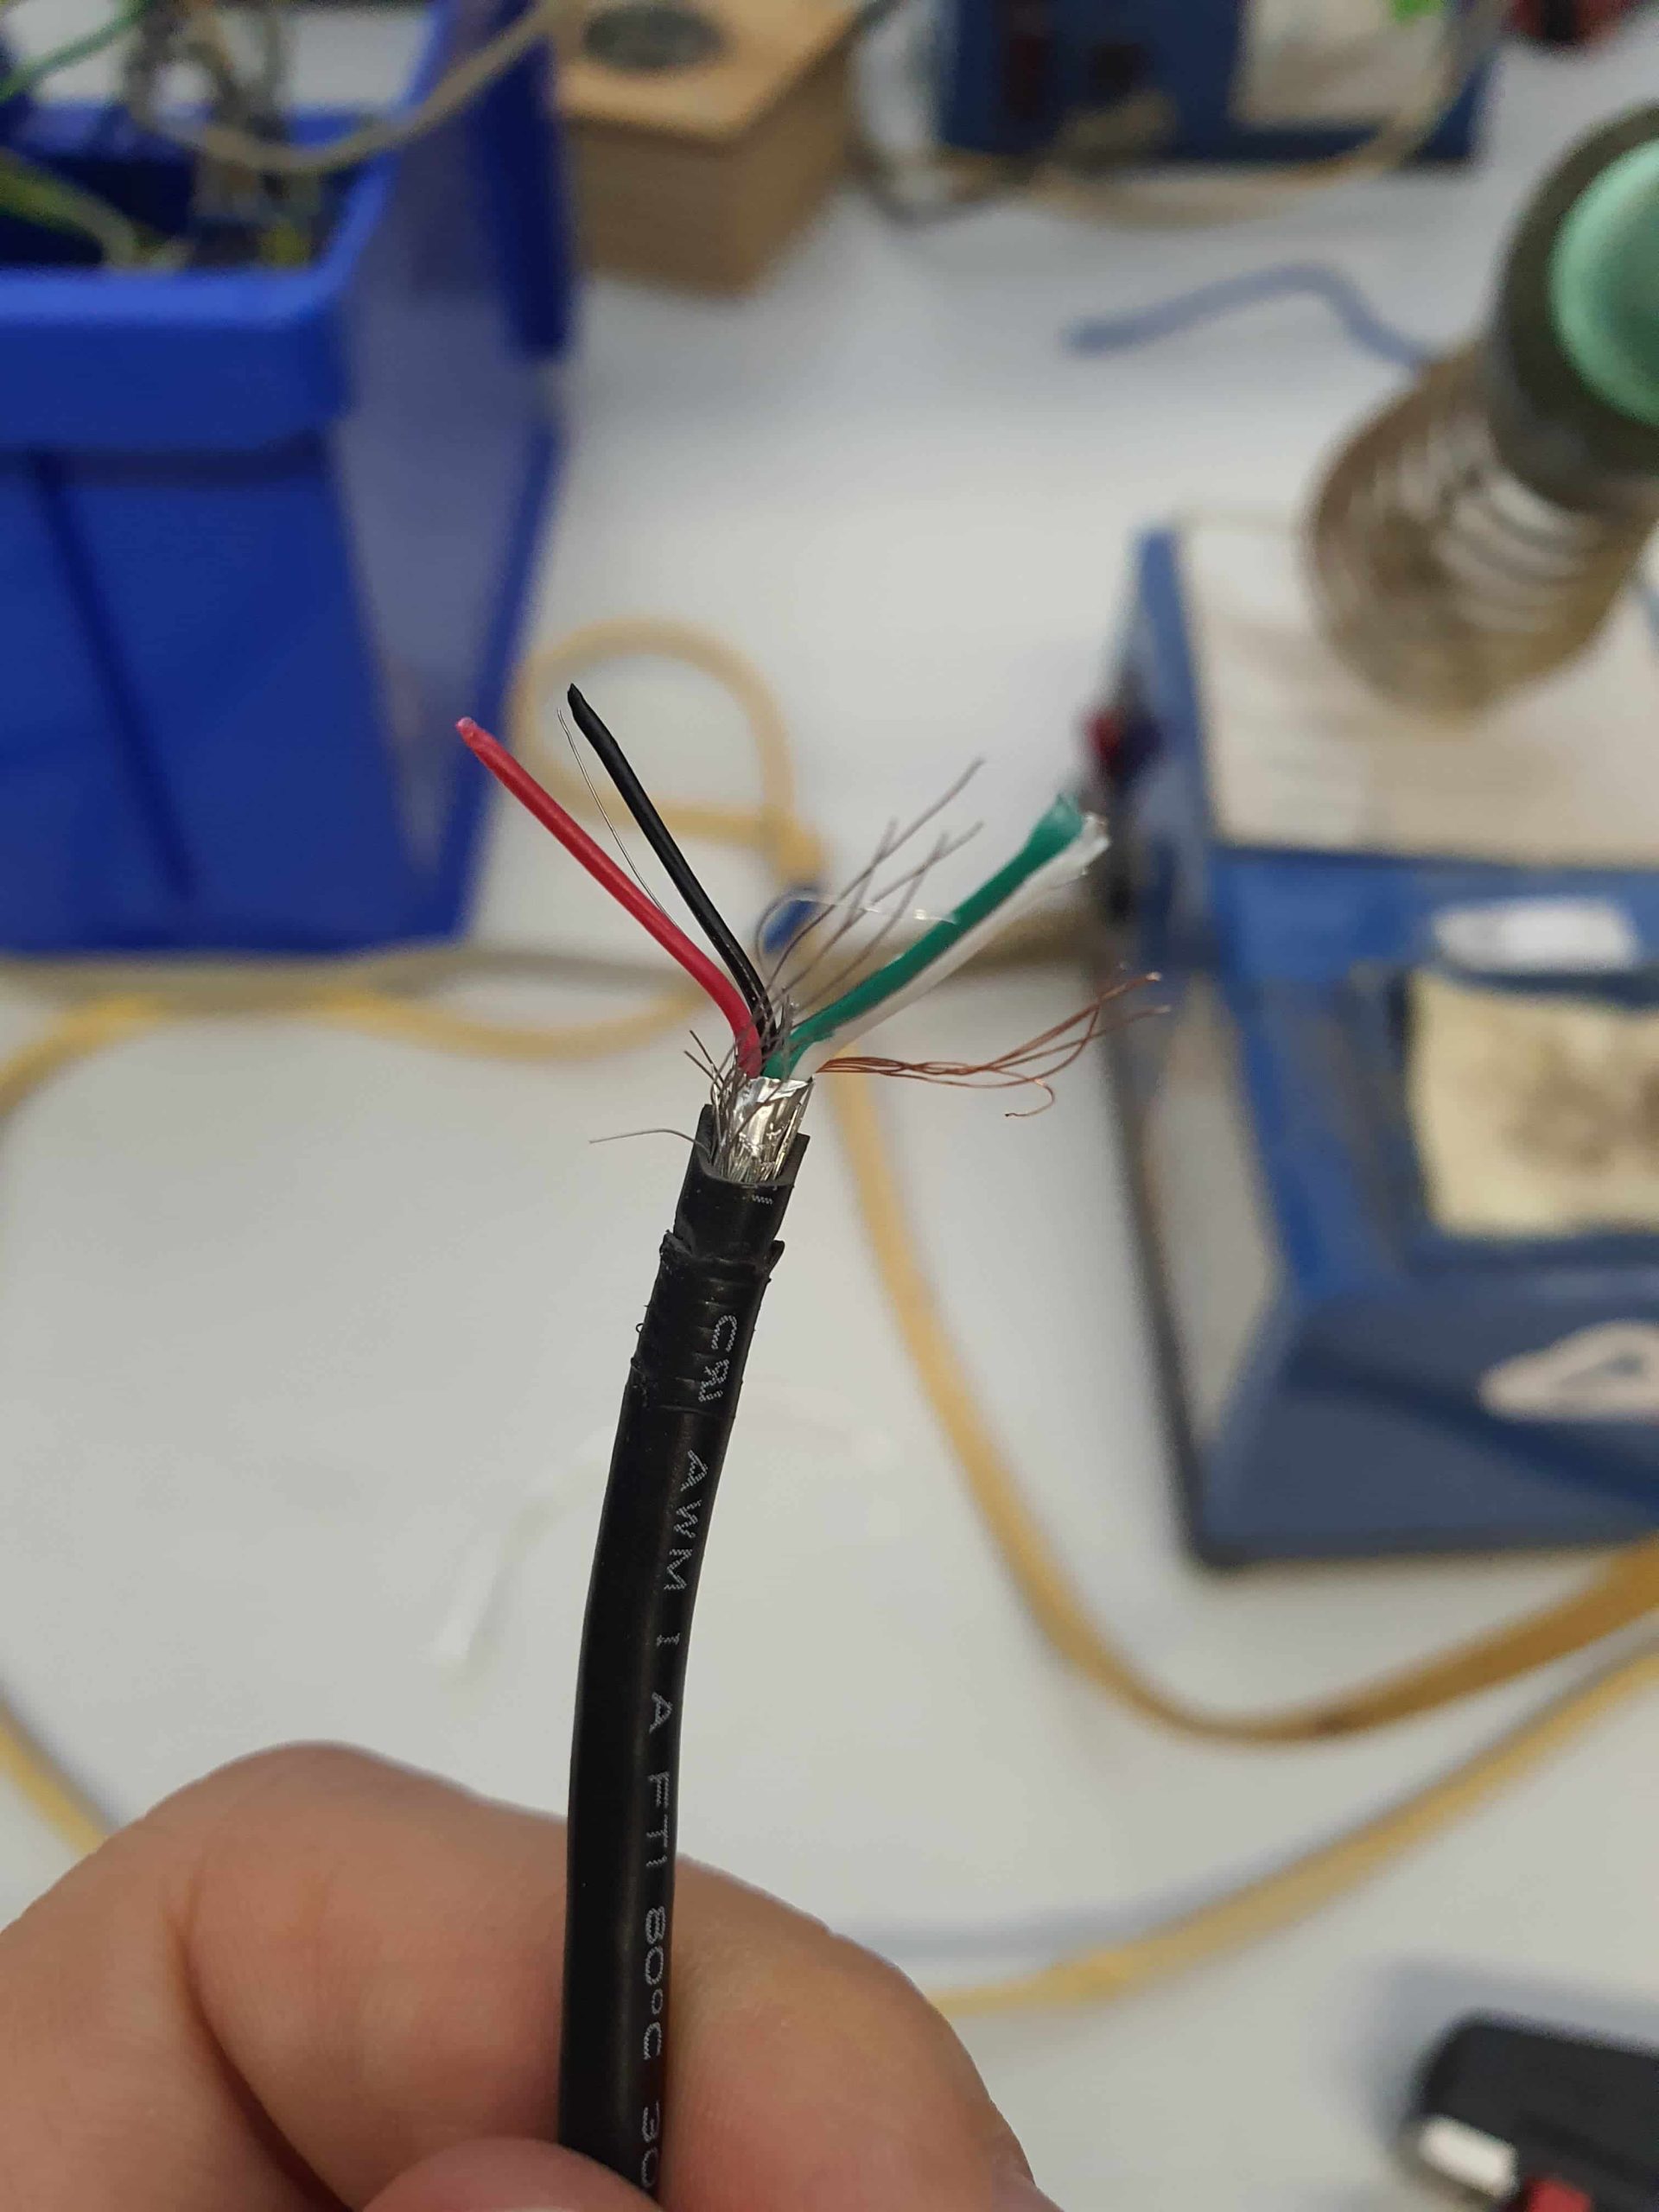 Freigelegte Kabel in schwarz, rot und grün am Ende eines isolierten Kabelstrangs.